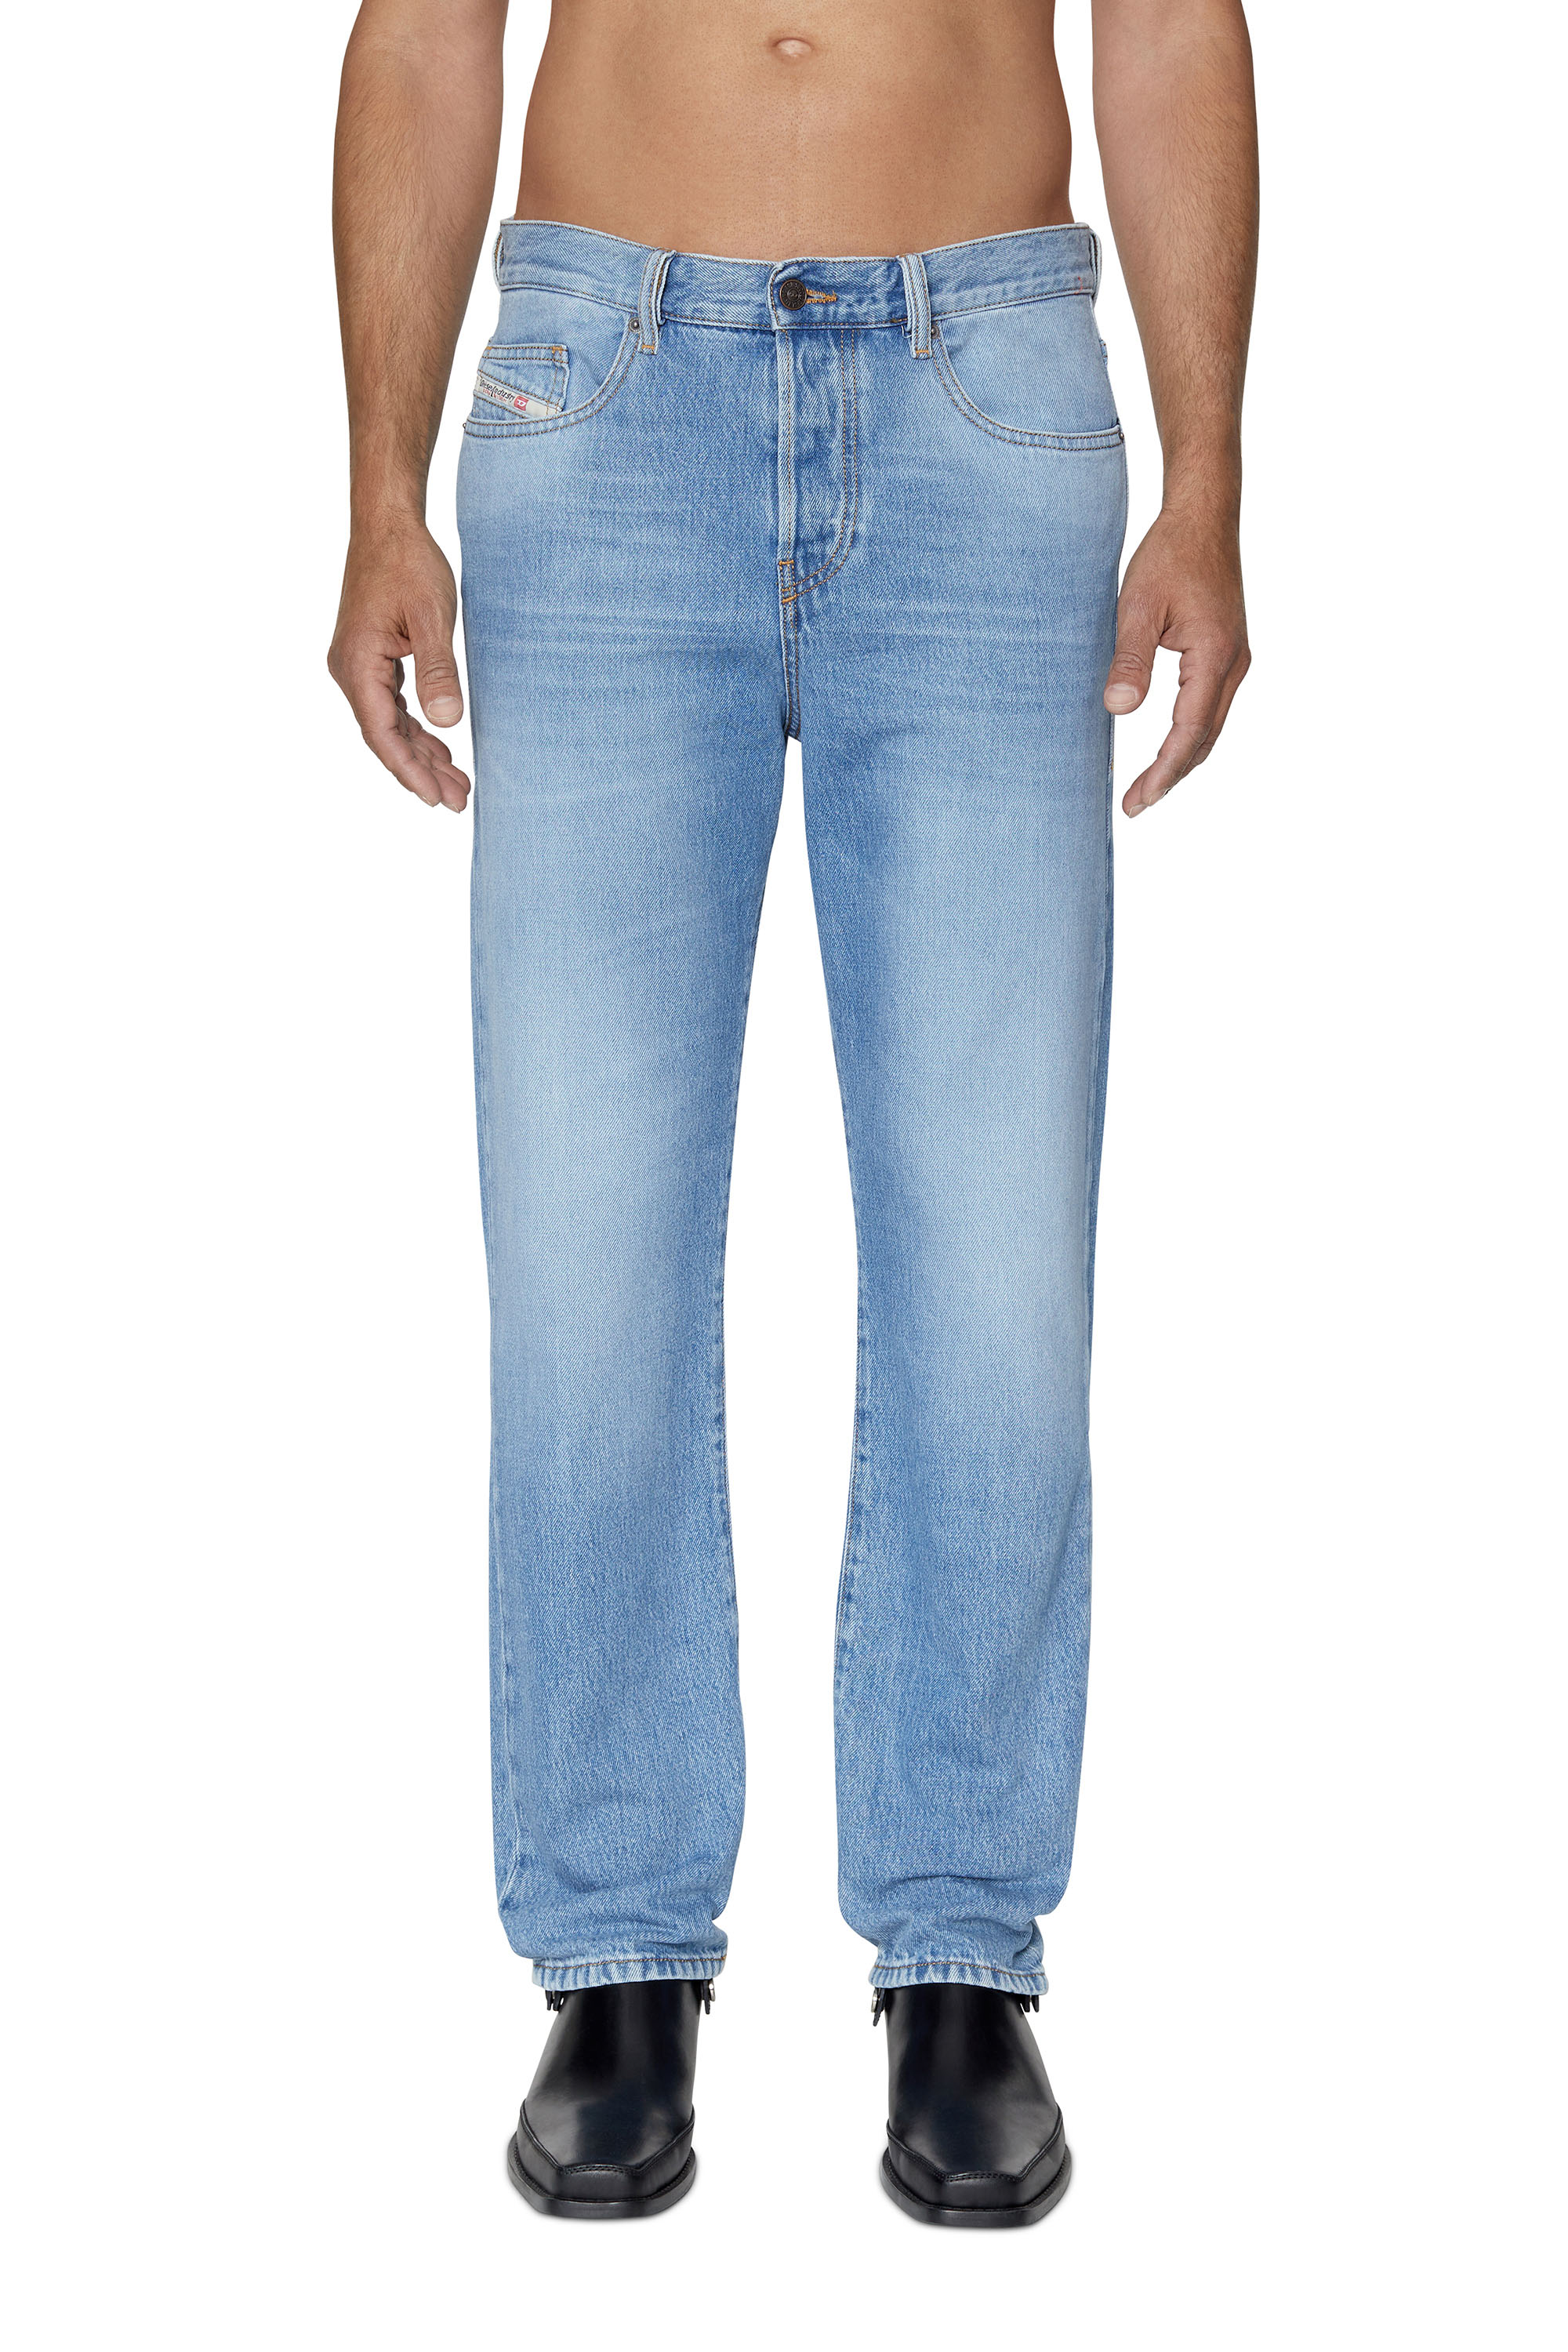 2020 D-VIKER 09C15 Straight Jeans, ミディアムブルー - ジーンズ